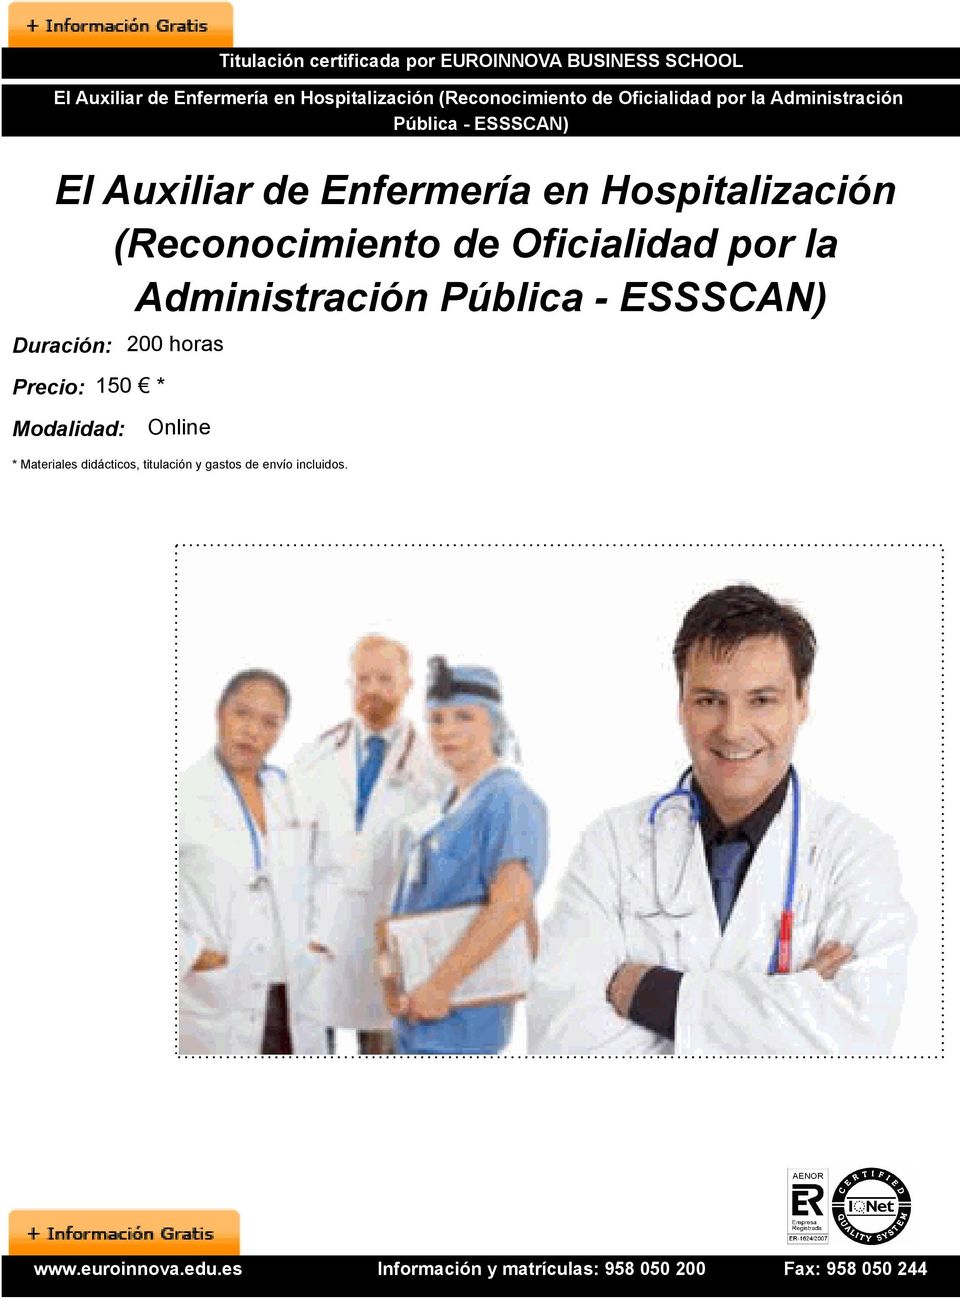 Enfermería en Hospitalización (Reconocimiento de Oficialidad por la Administración